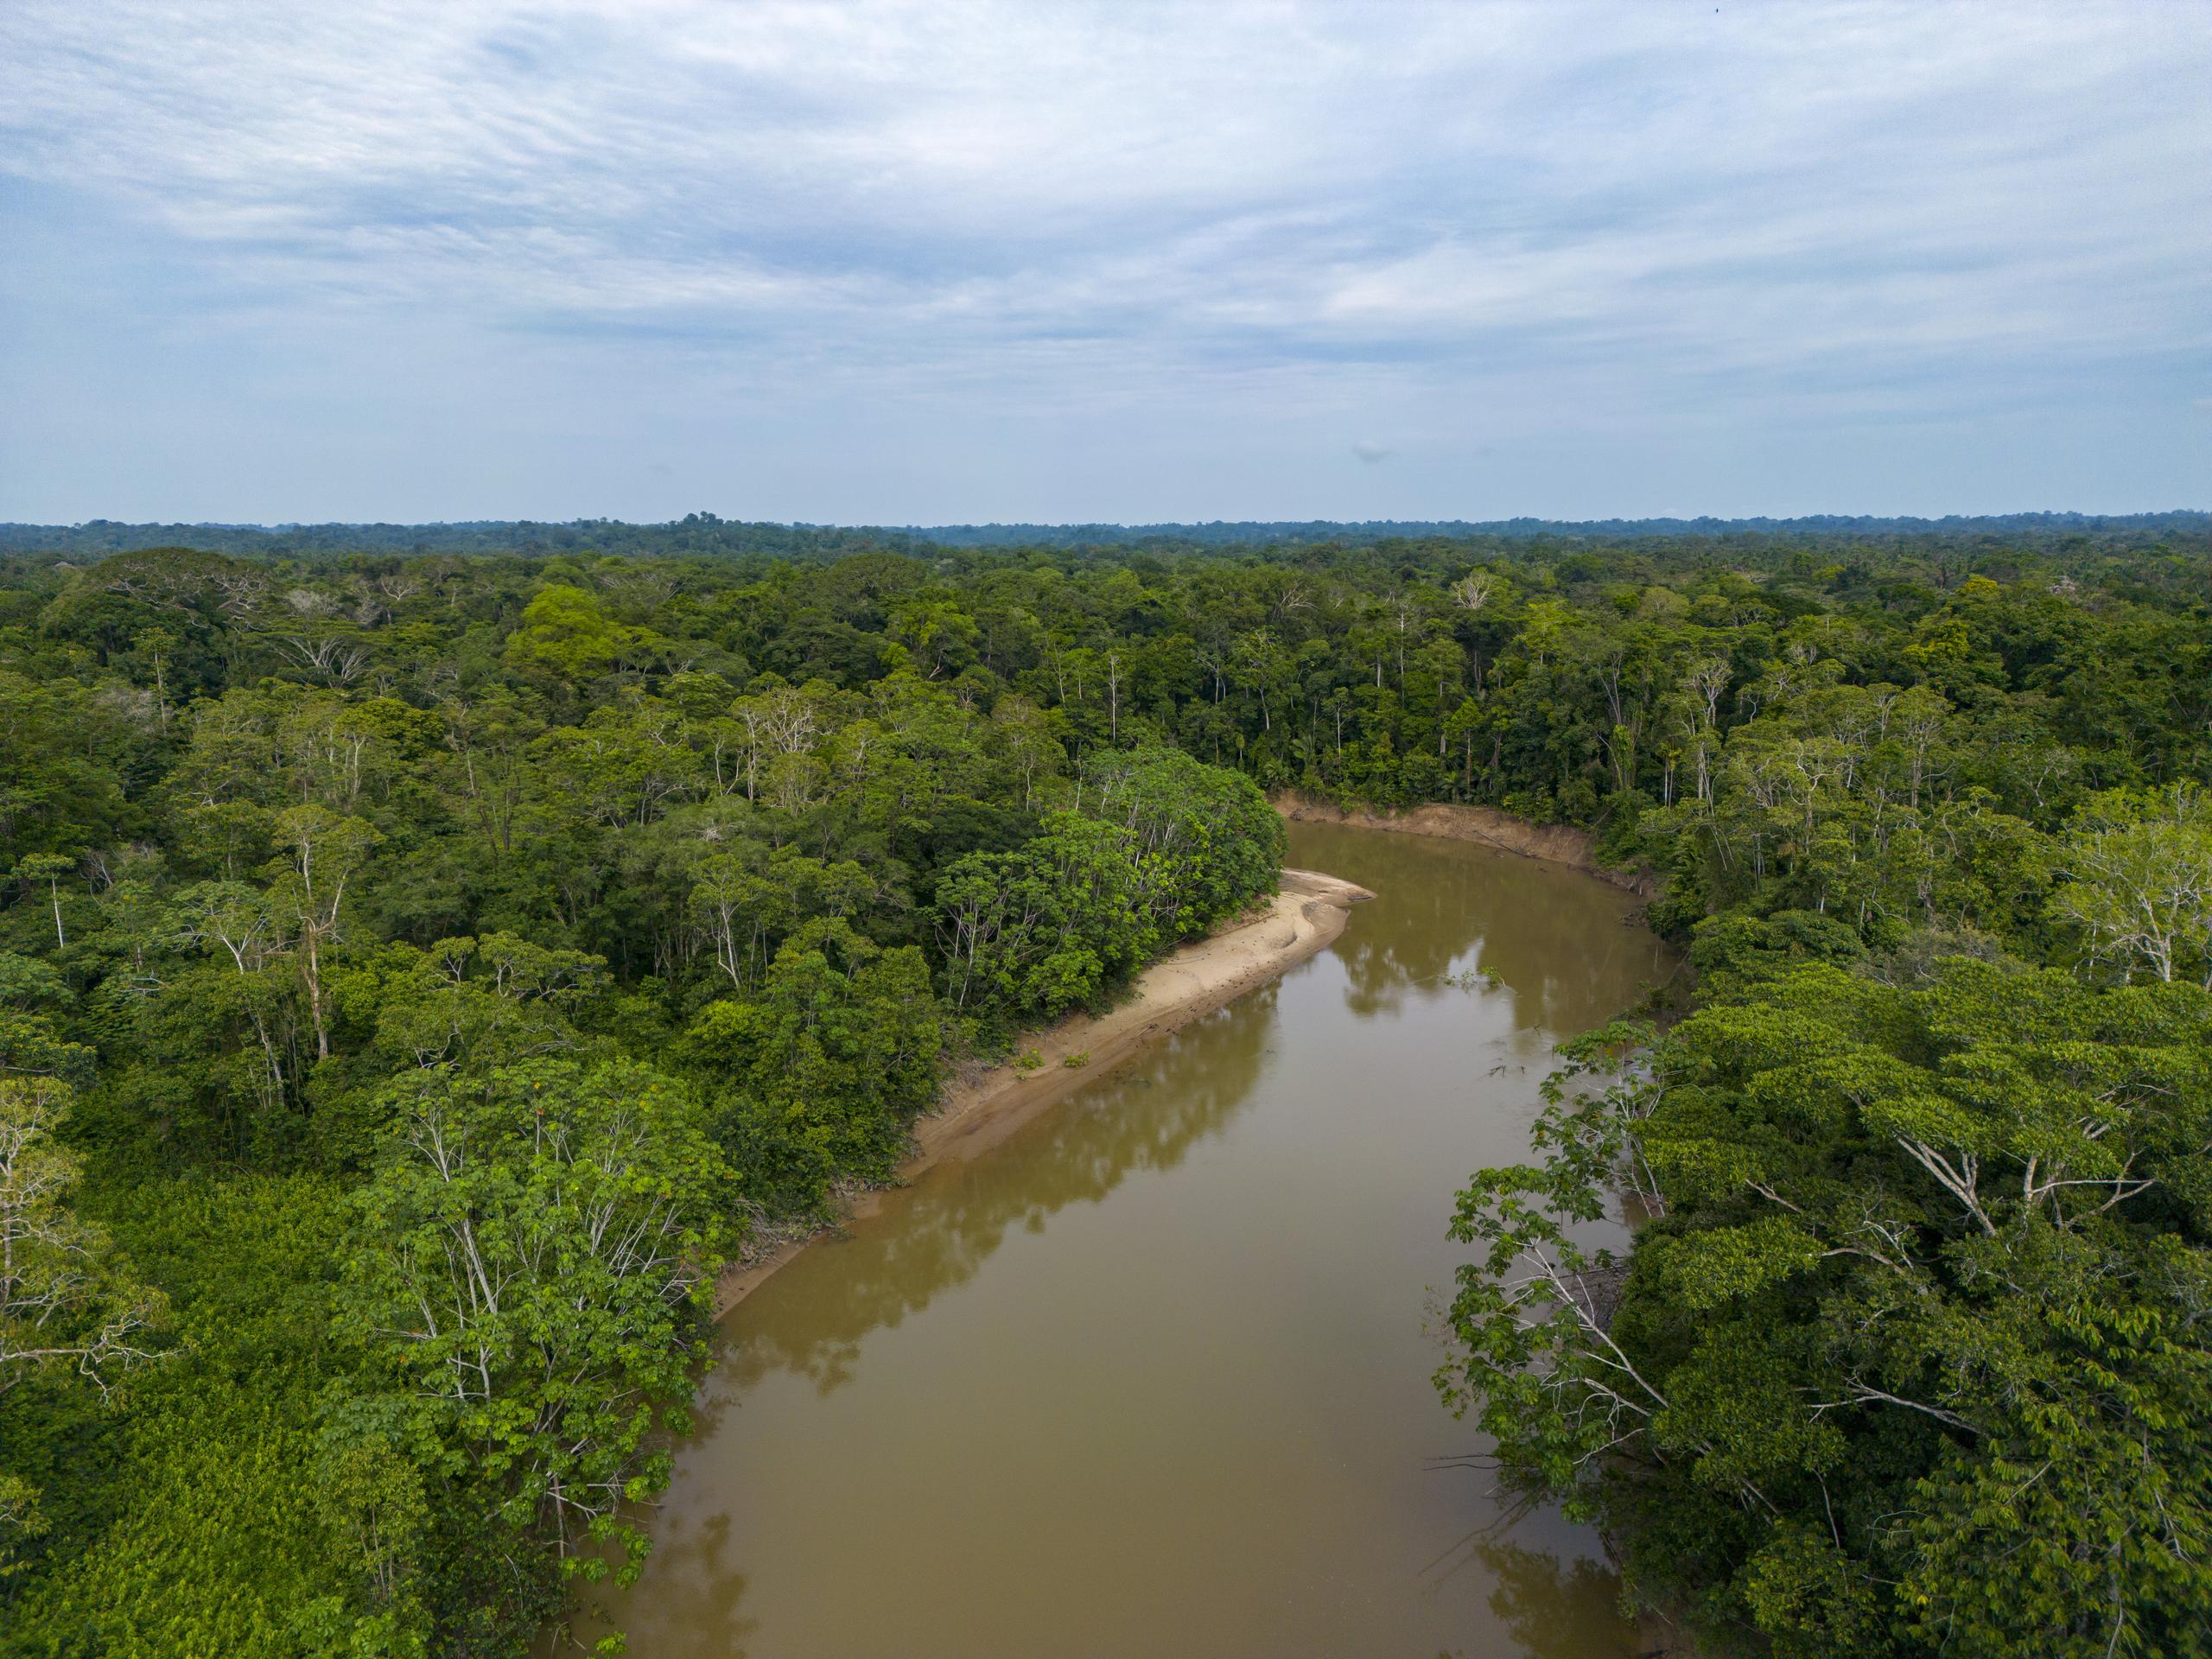 Imagen de archivo tomada con un dron muestra el río Tiputini en la comunidad Guiyero, el 29 de noviembre de 2022 en el Parque Nacional Yasuní (Ecuador). EFE/José Jácome/Archivo
